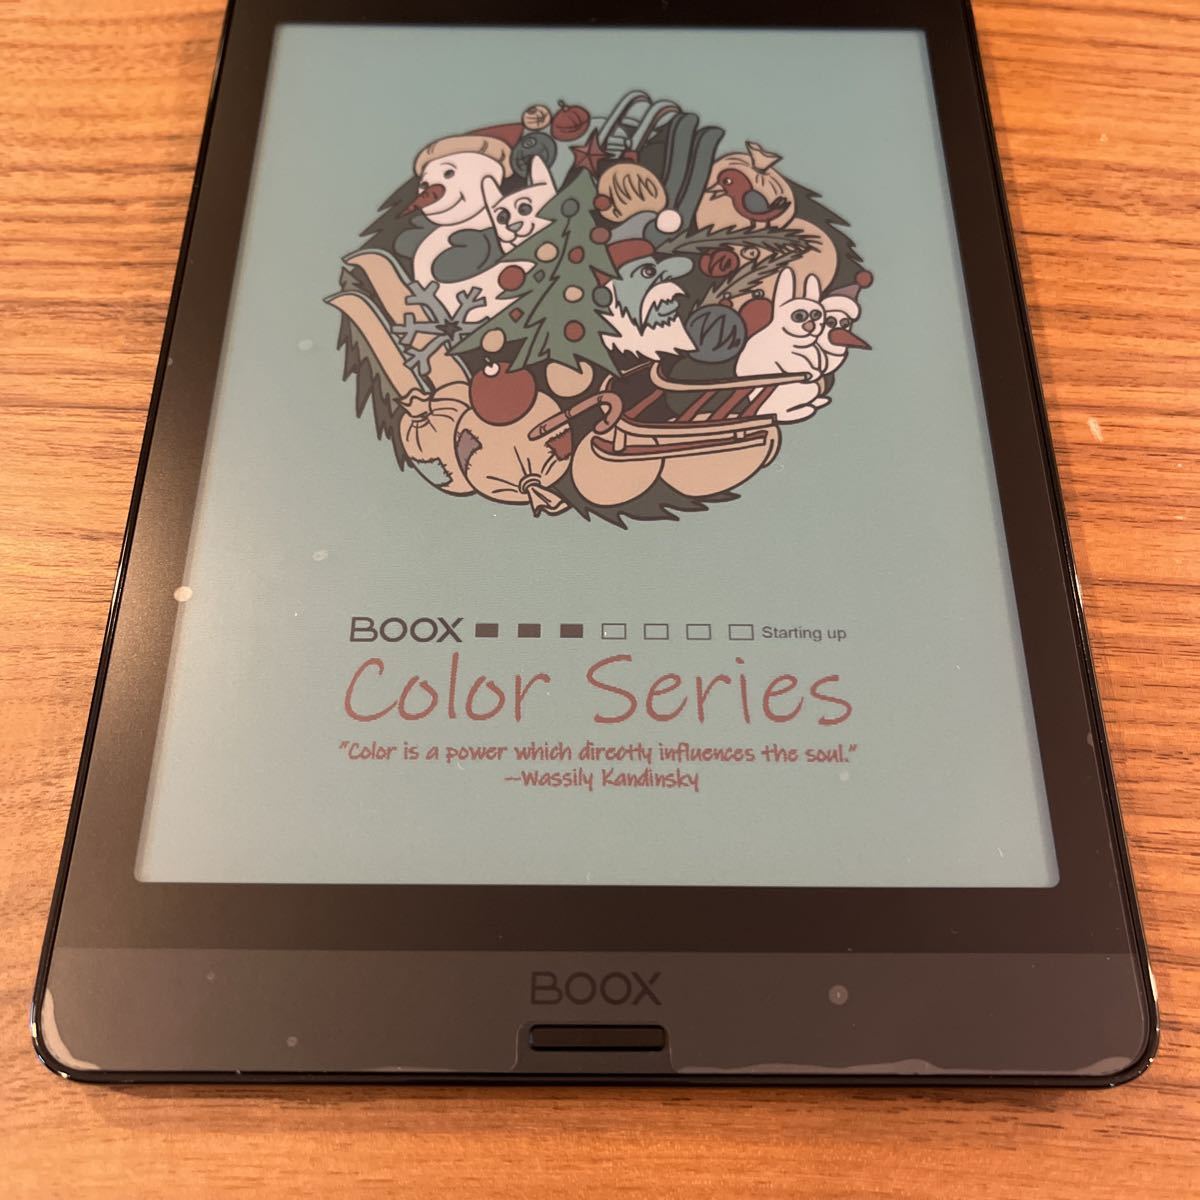 [ цвет электронный бумага * чтение оптимальный ]ONYX Nova3 Color Android планшет BOOX черный gold доллар Wi-Fi электронная книга 